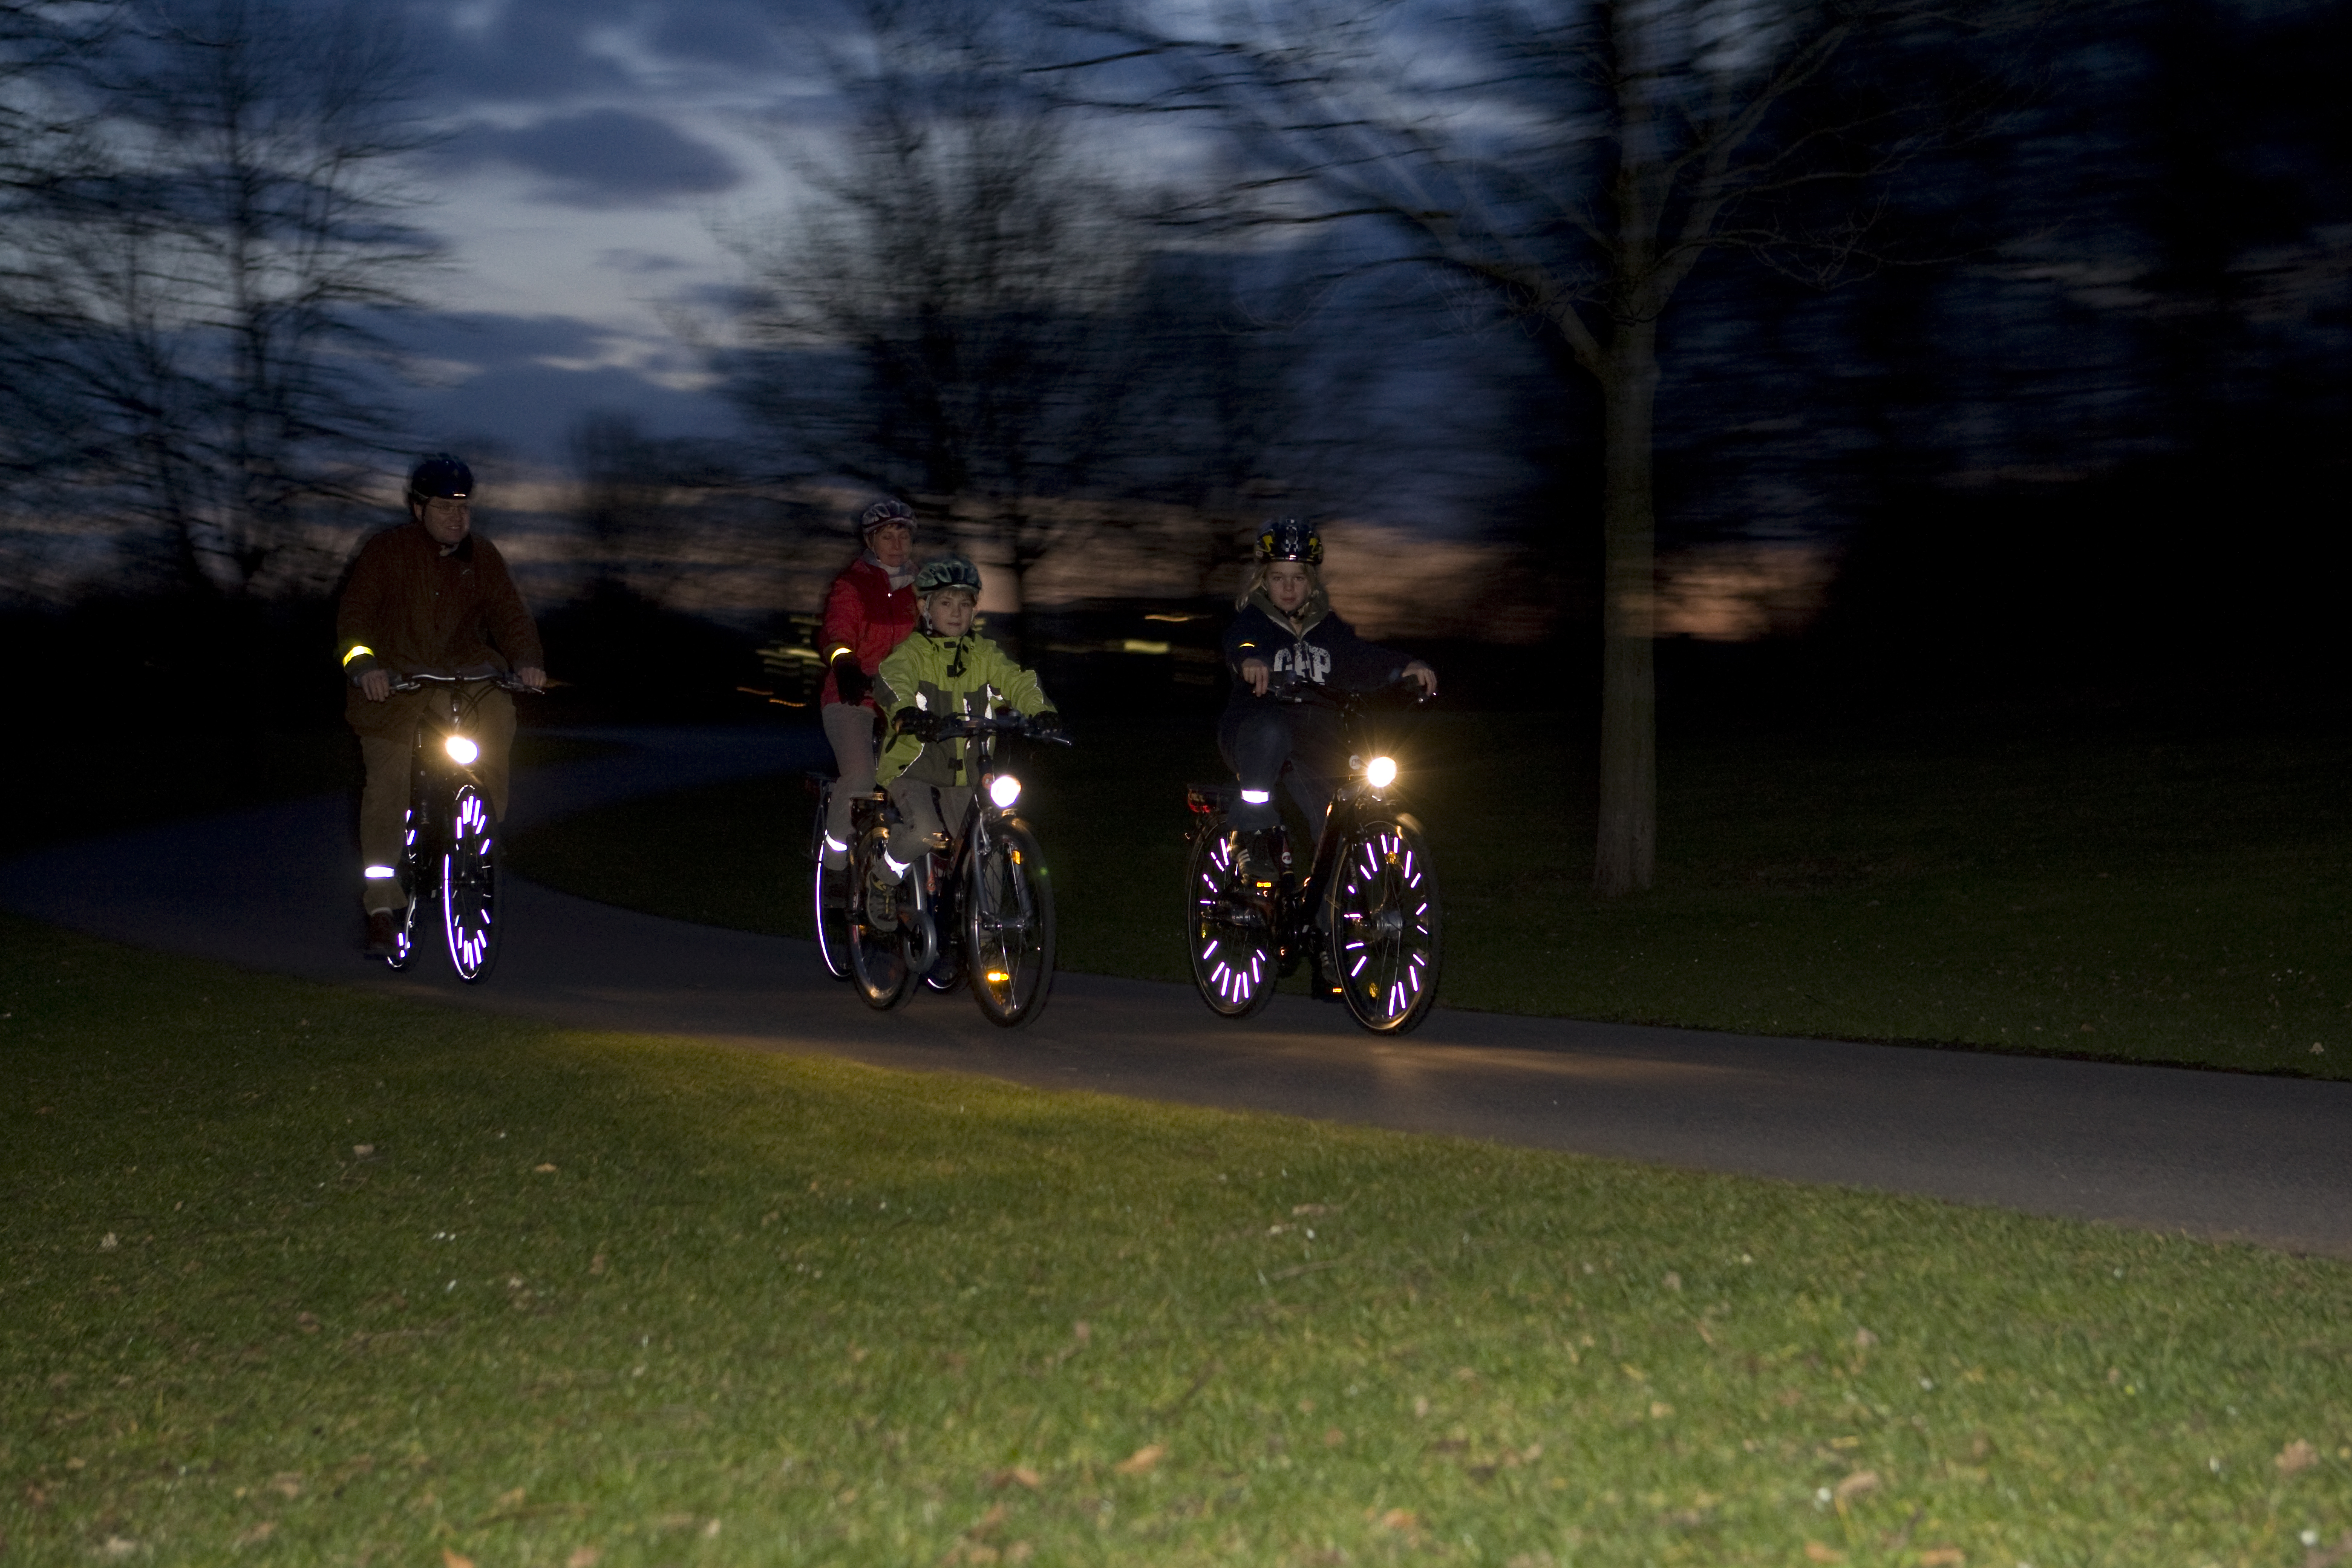 Dunkelheit: Reflektoren helfen Fußgängern und Radfahrern